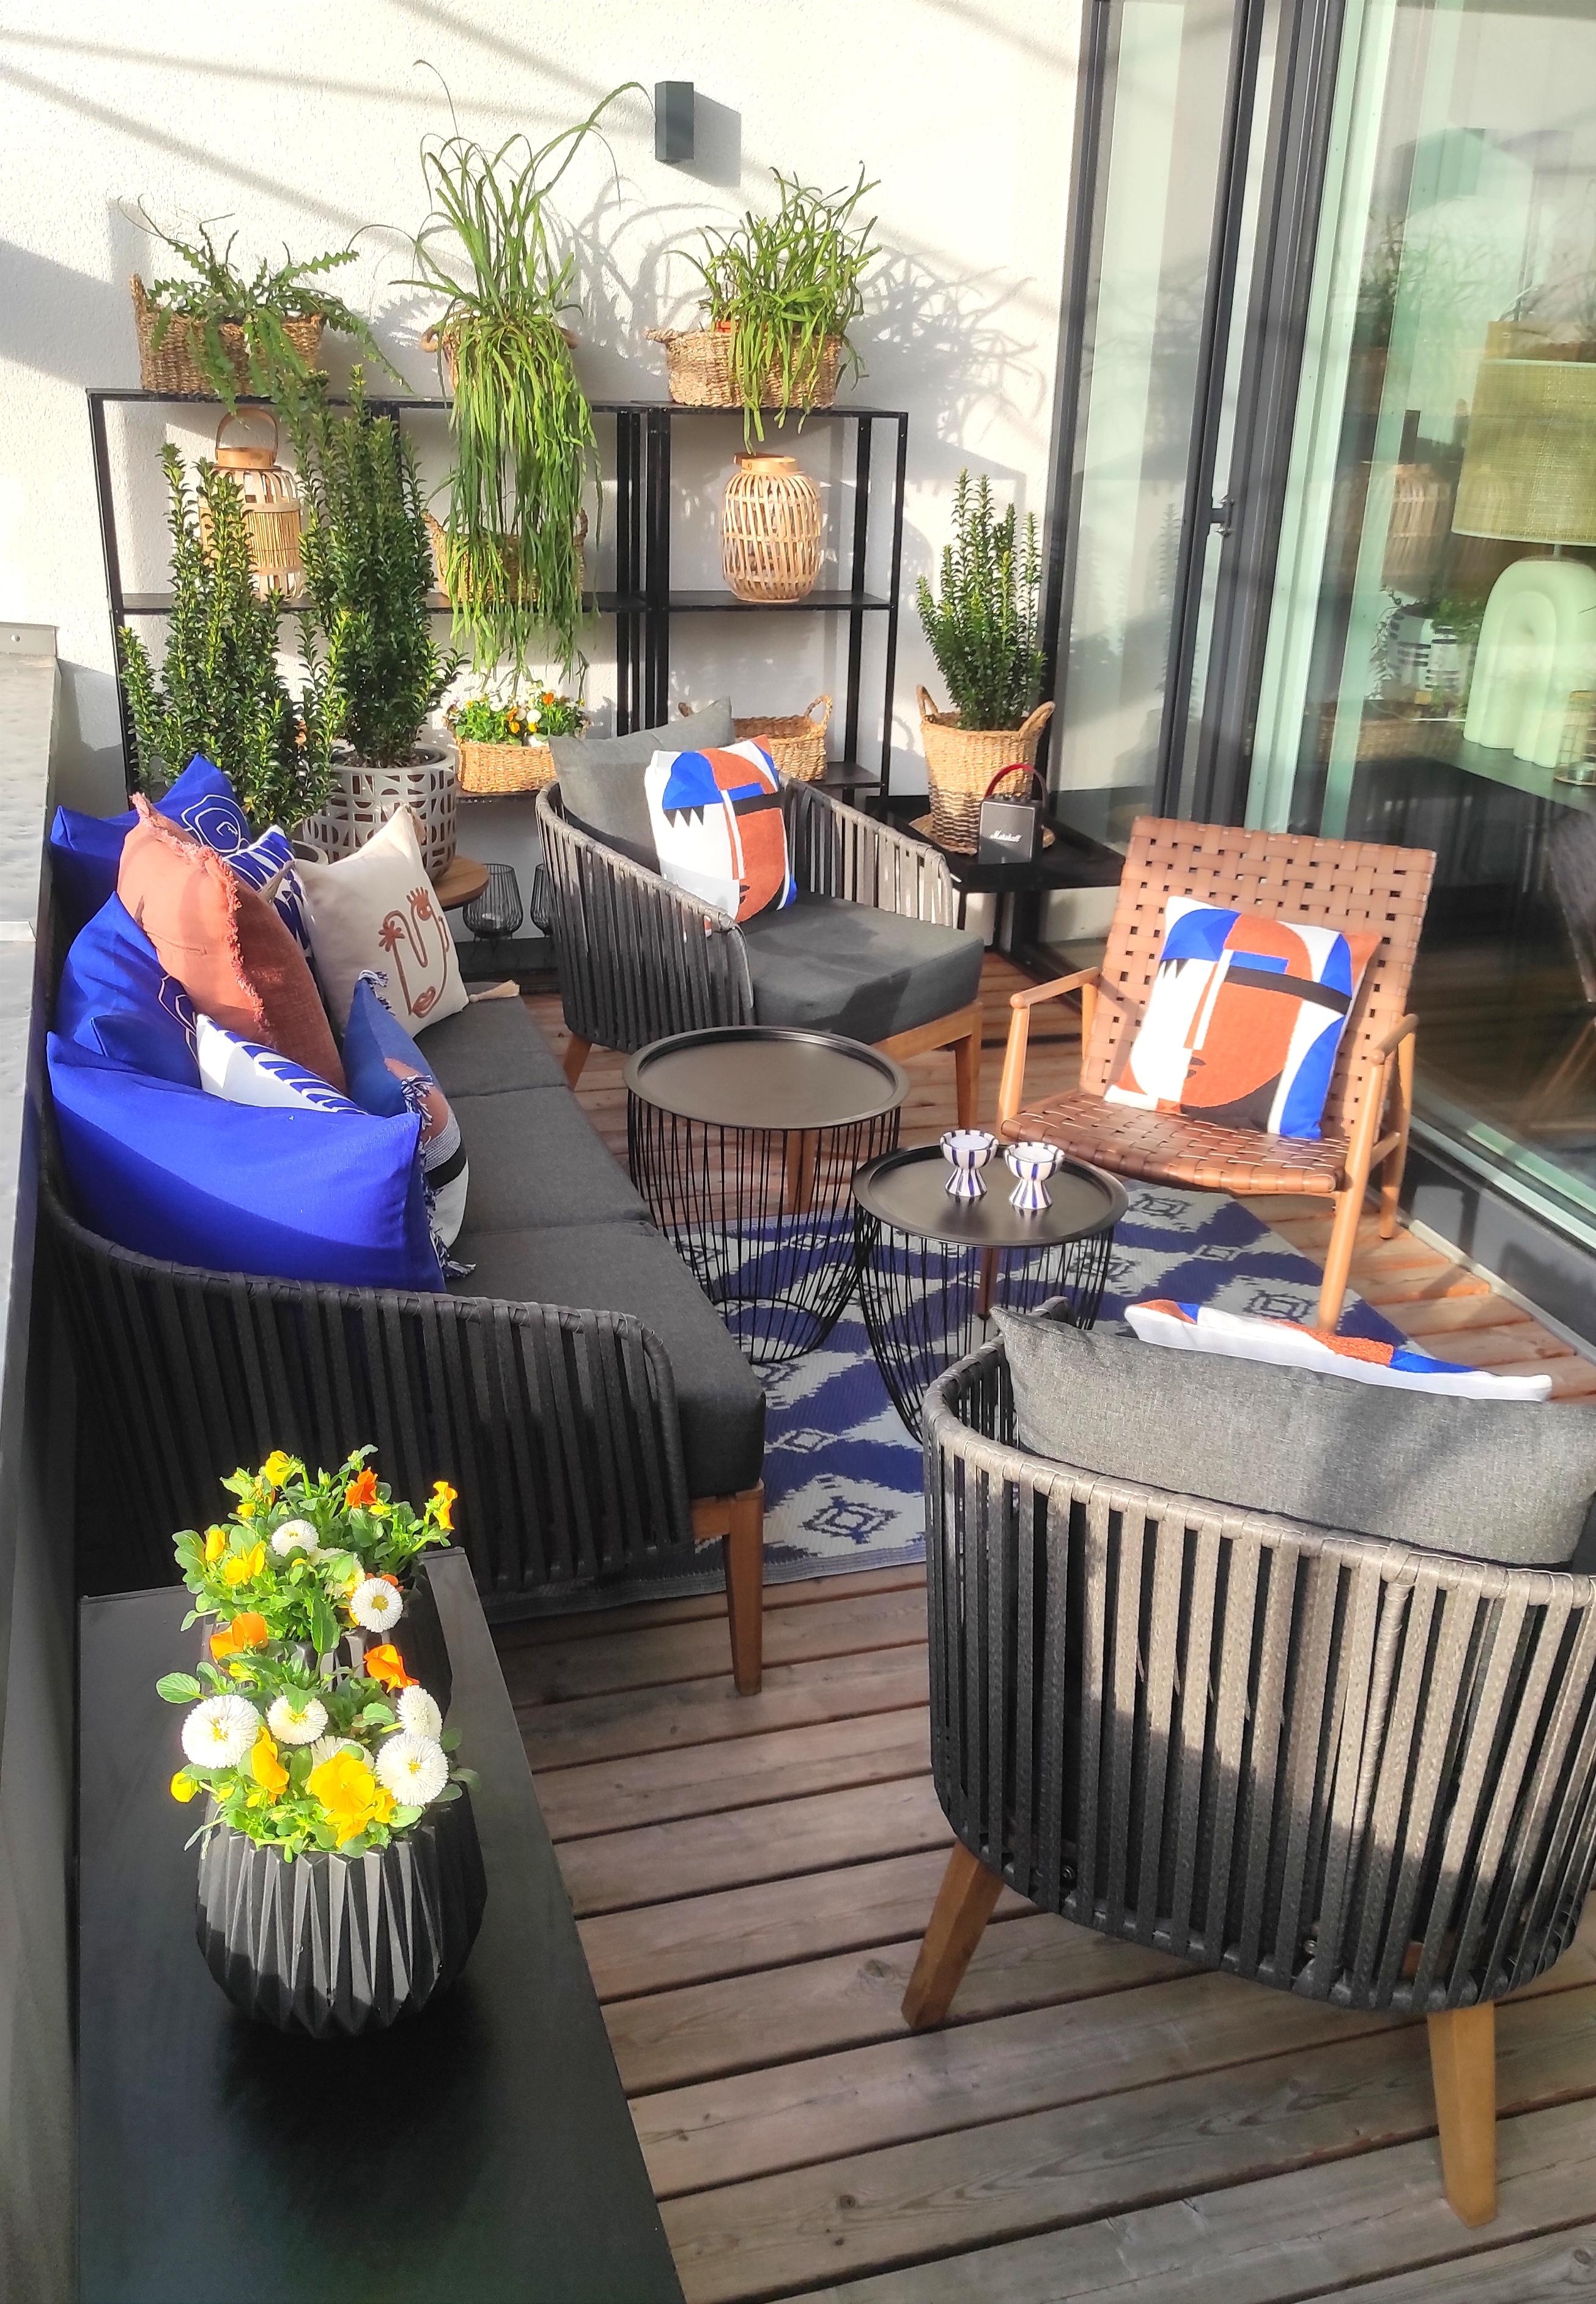 #balkon #couchliebt #balkonblumen #outdoor #living #interior #interiordesign #home #design #decor #decoration #spring 